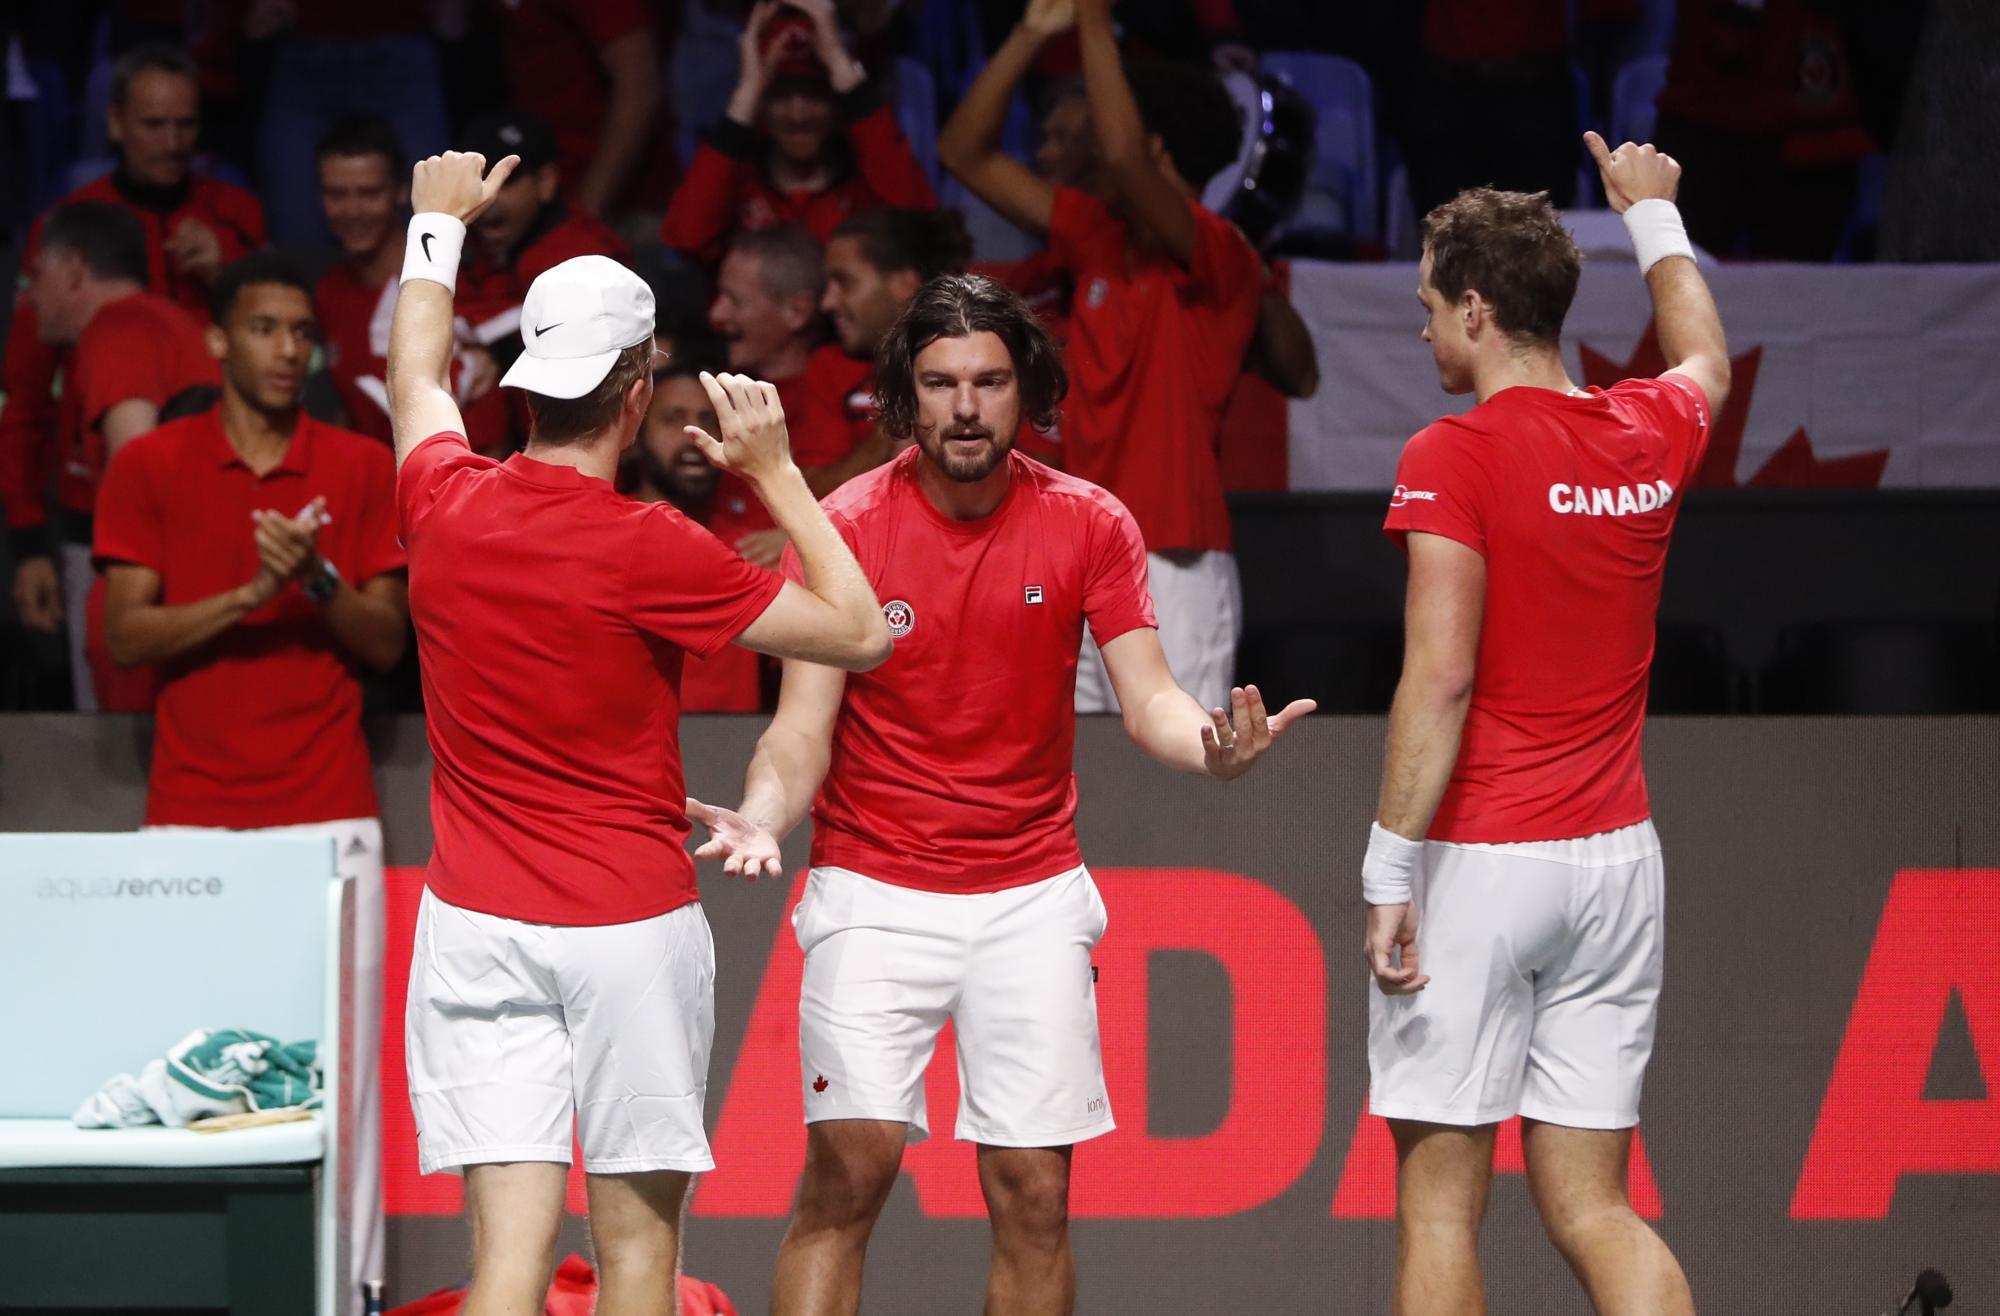 Davis Cup finals' quarter-finals: Germany vs. Canada